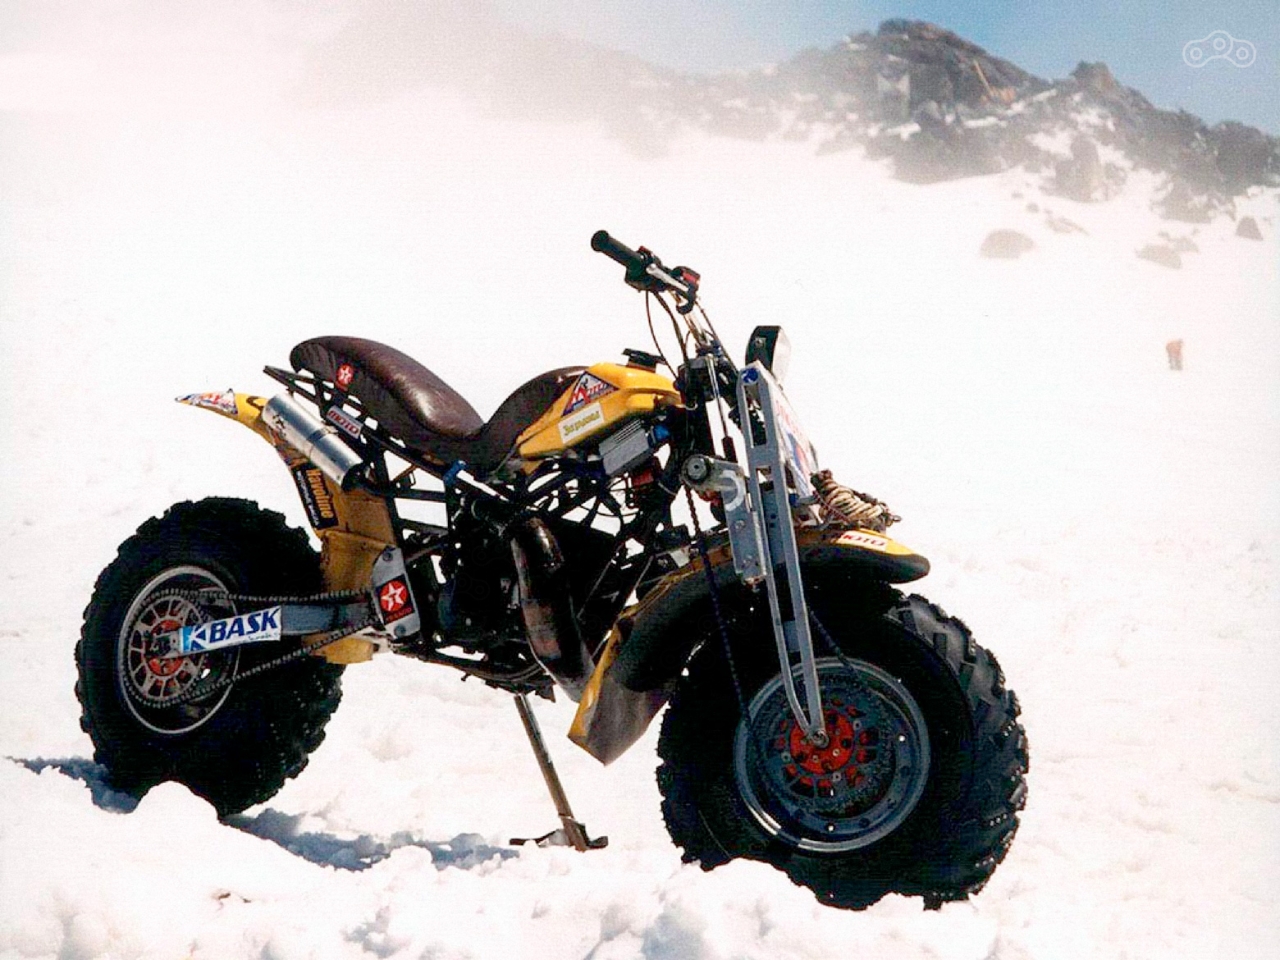 Отечественный мотоцикл «Баксан» во время экспедиции на гору Эльбрус. Фото – Сергей Груздев